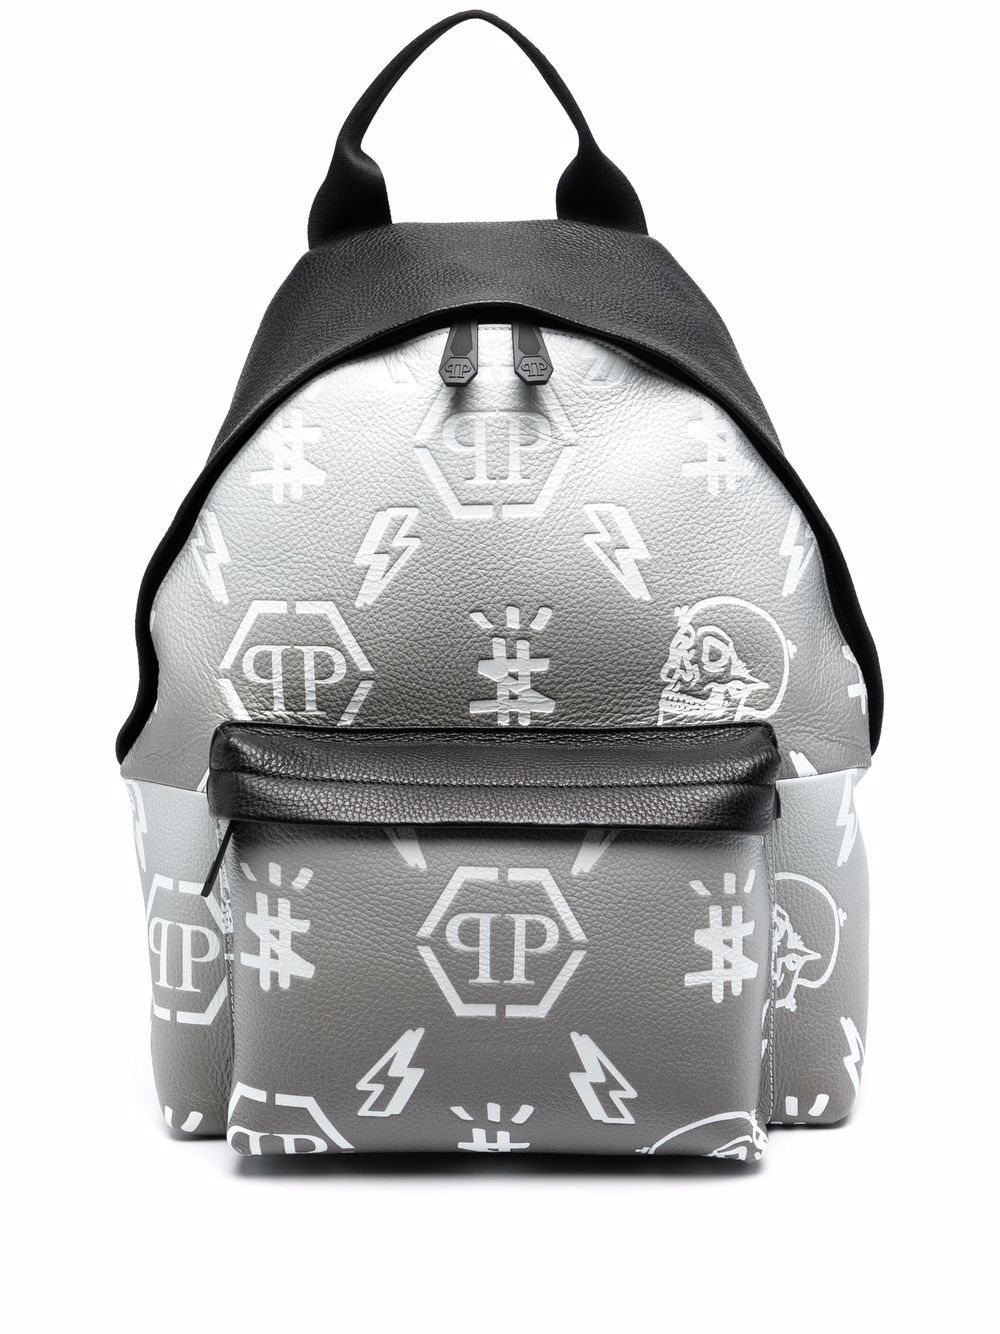 фото Philipp plein рюкзак с эффектом градиента и логотипом